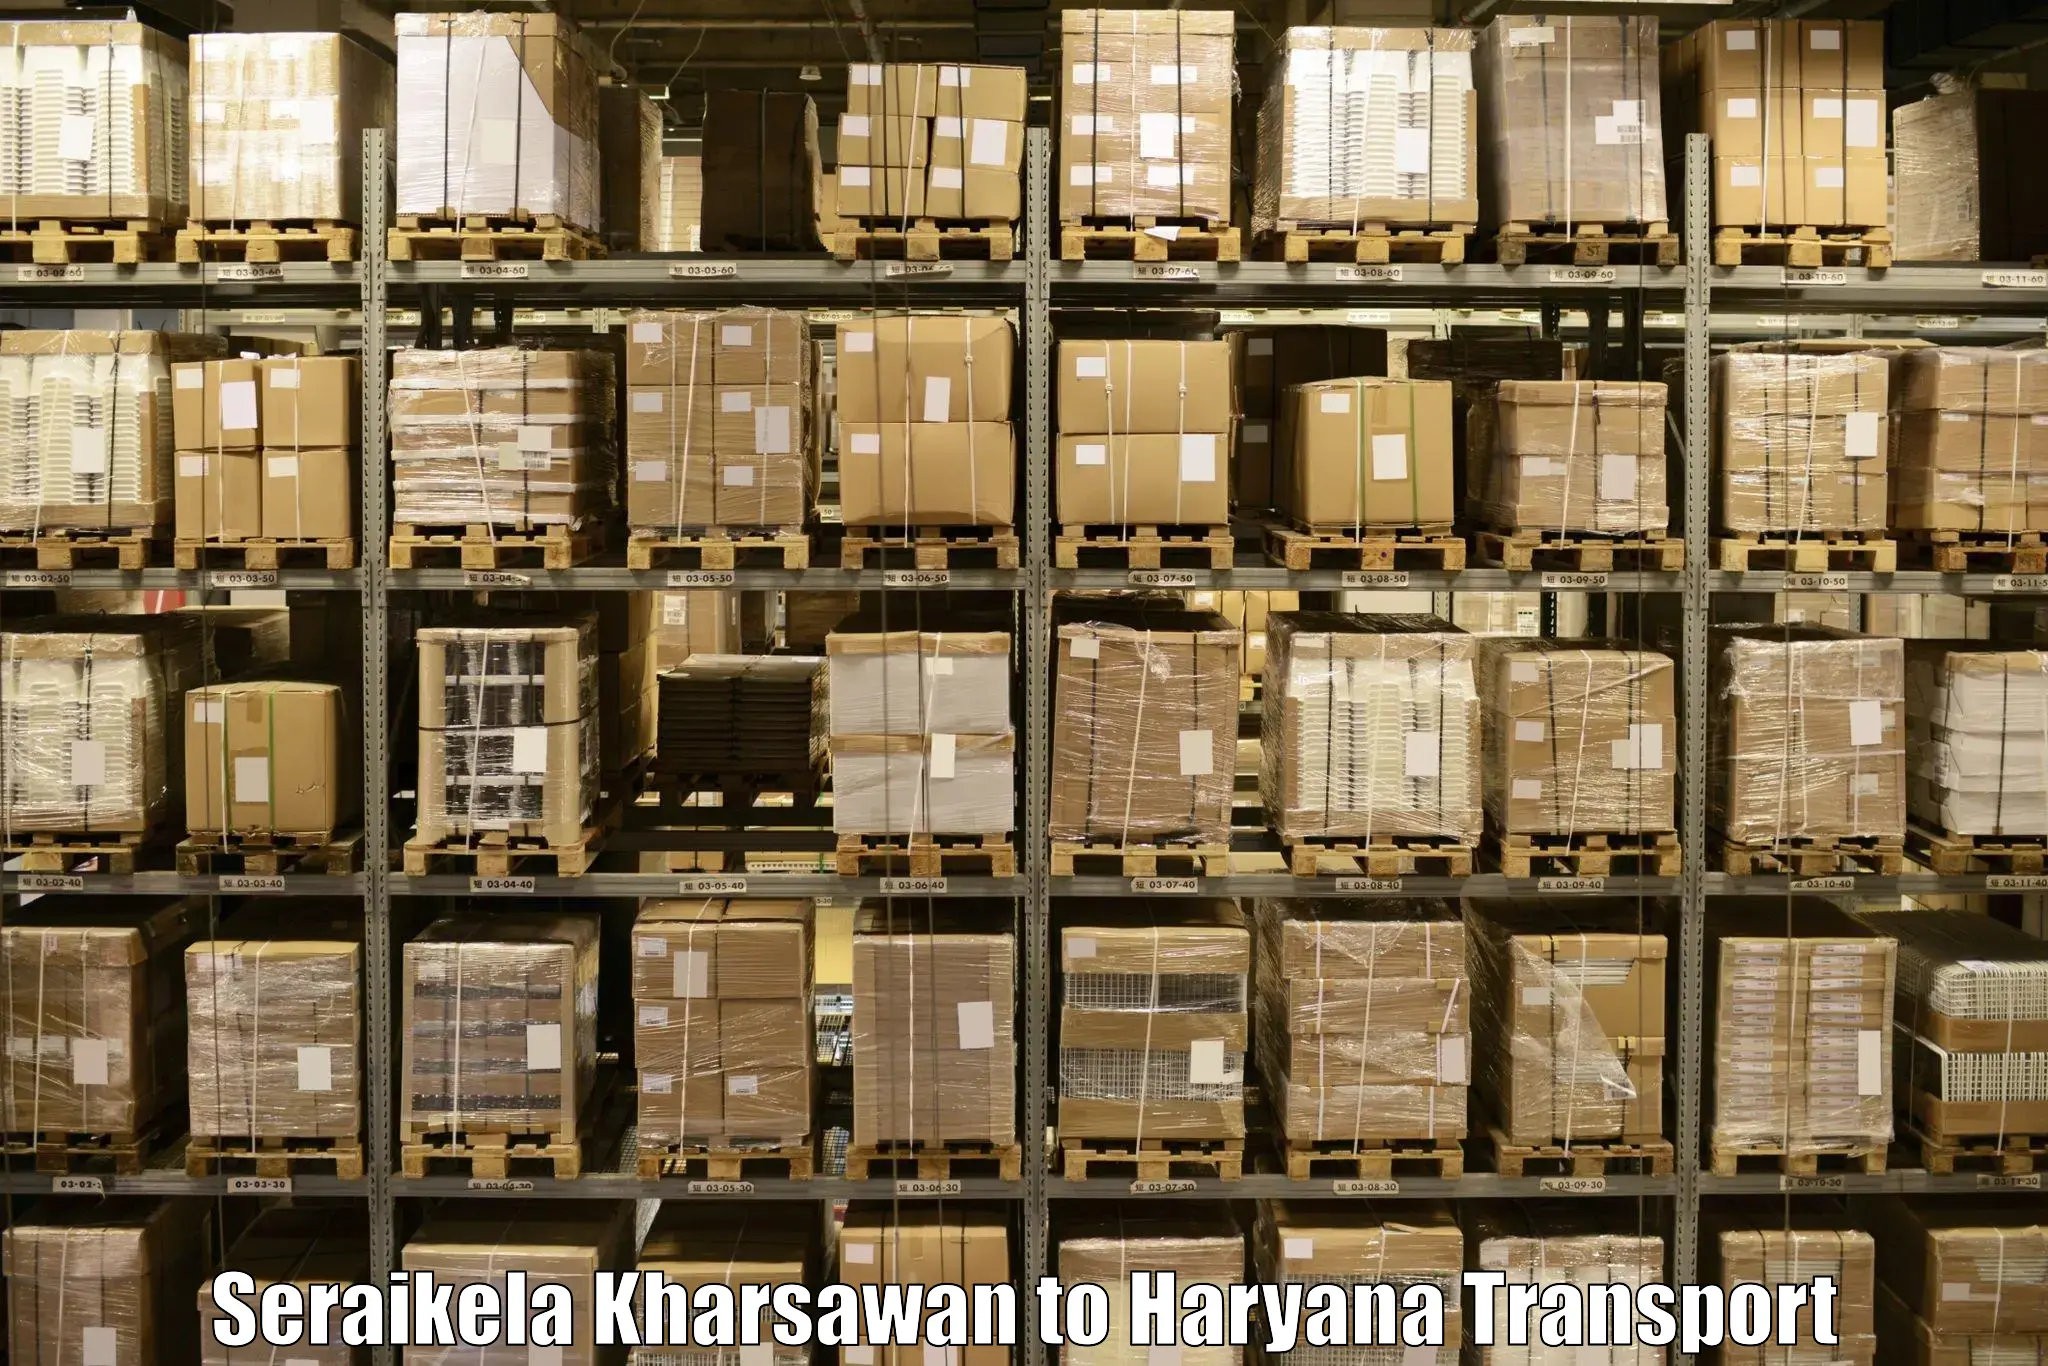 Furniture transport service Seraikela Kharsawan to NCR Haryana